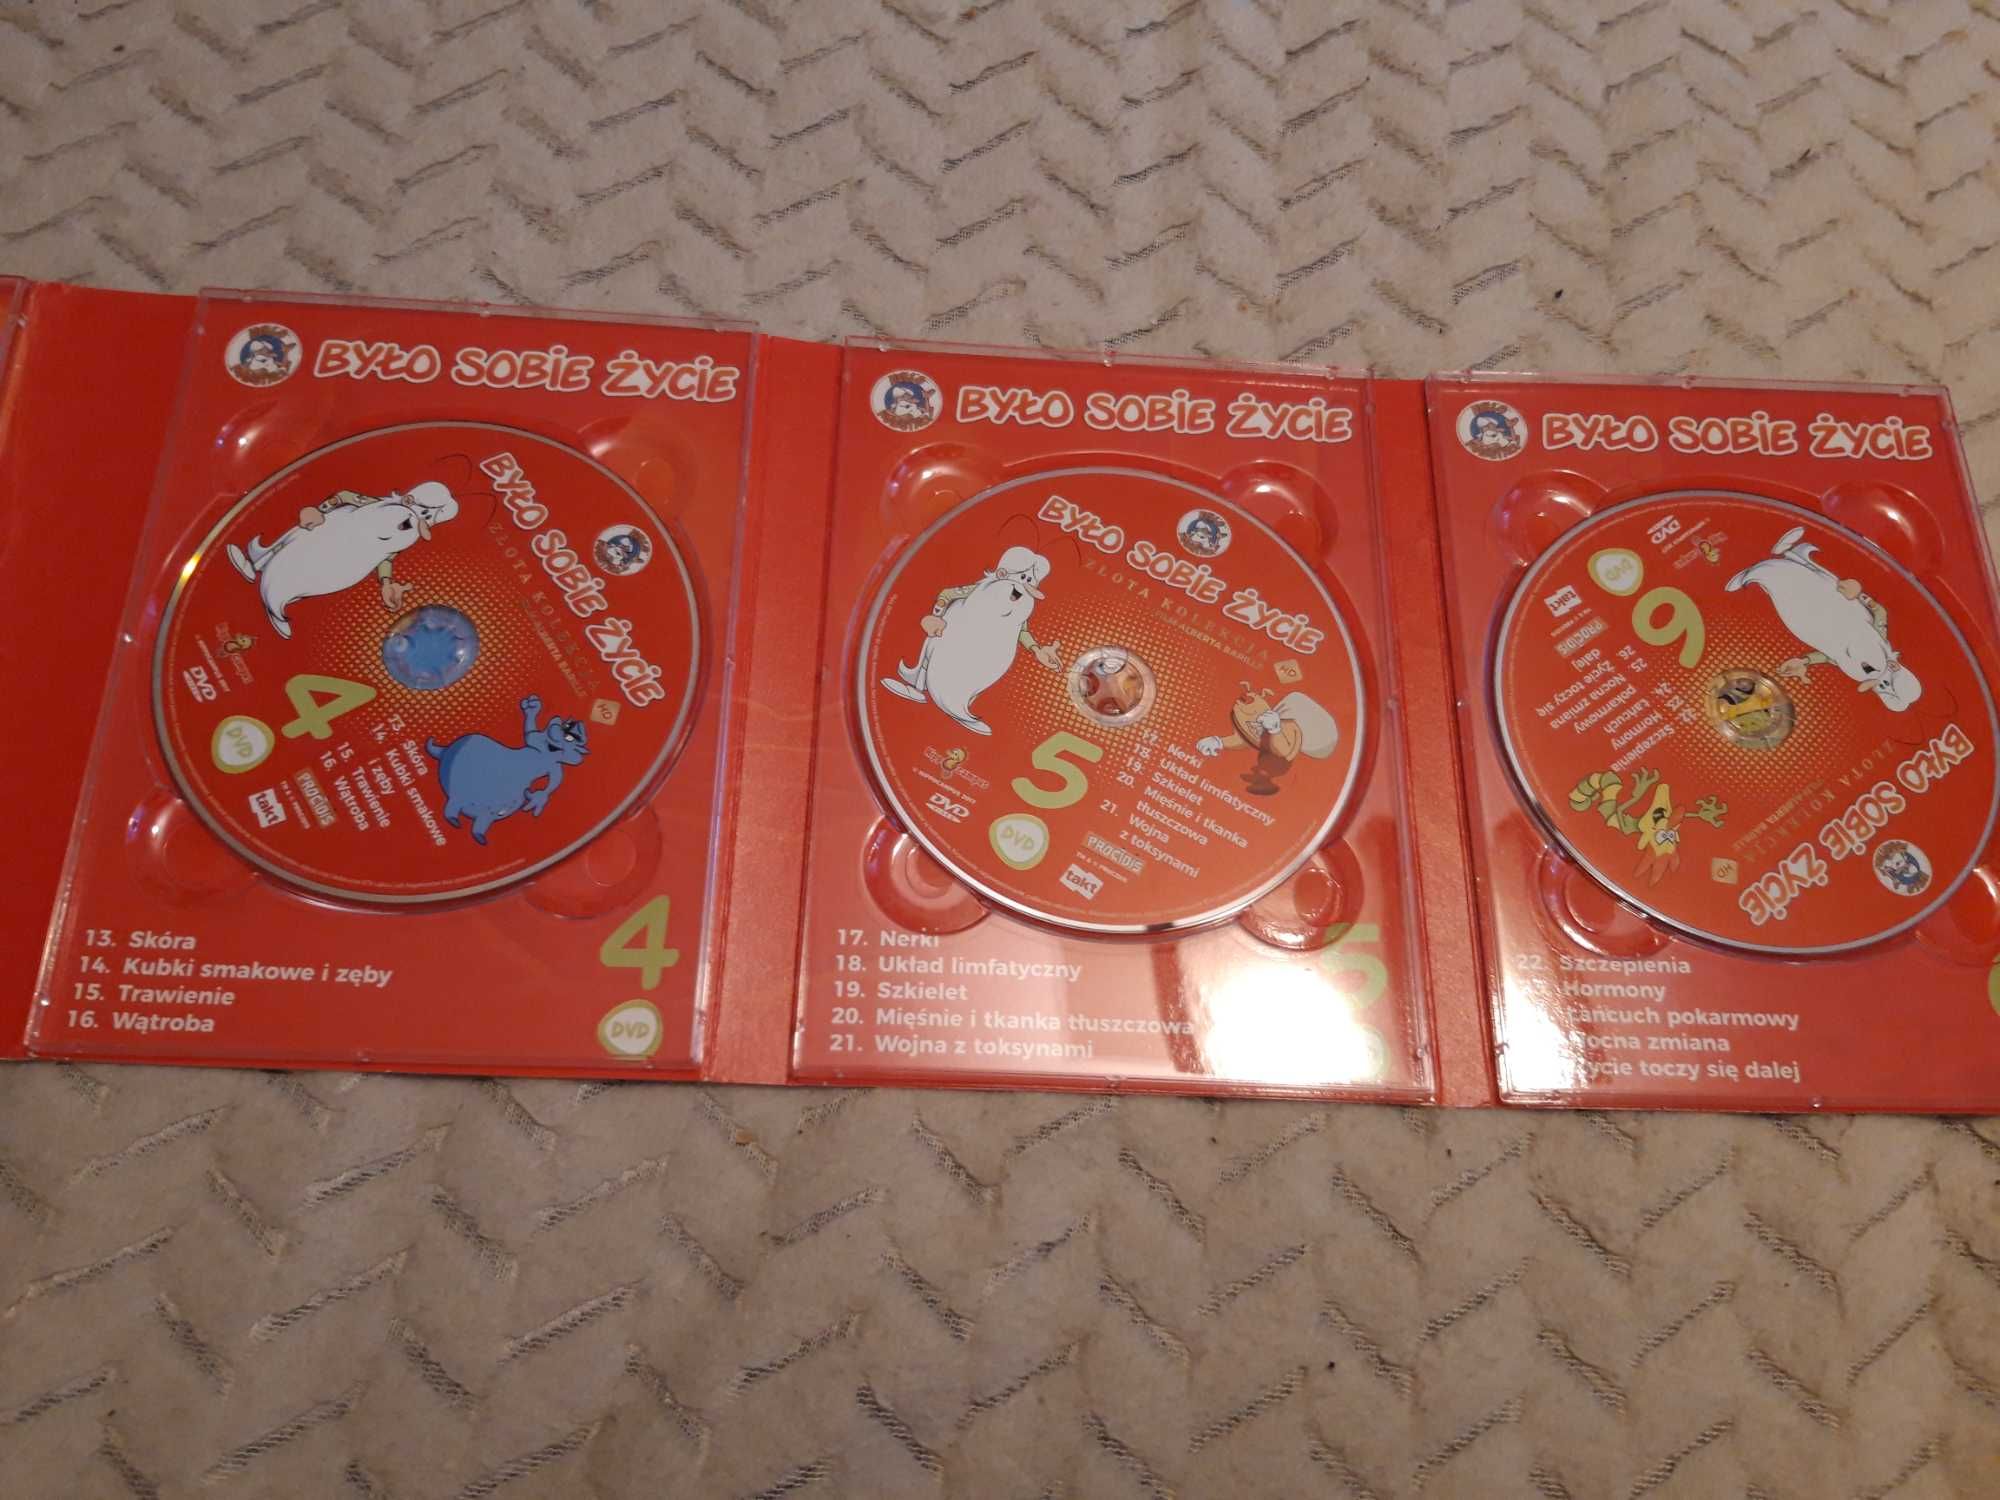 Było sobie życie Złota kolekcja 6 DVD gratis Odjazdowe ZOO - 3 płyty